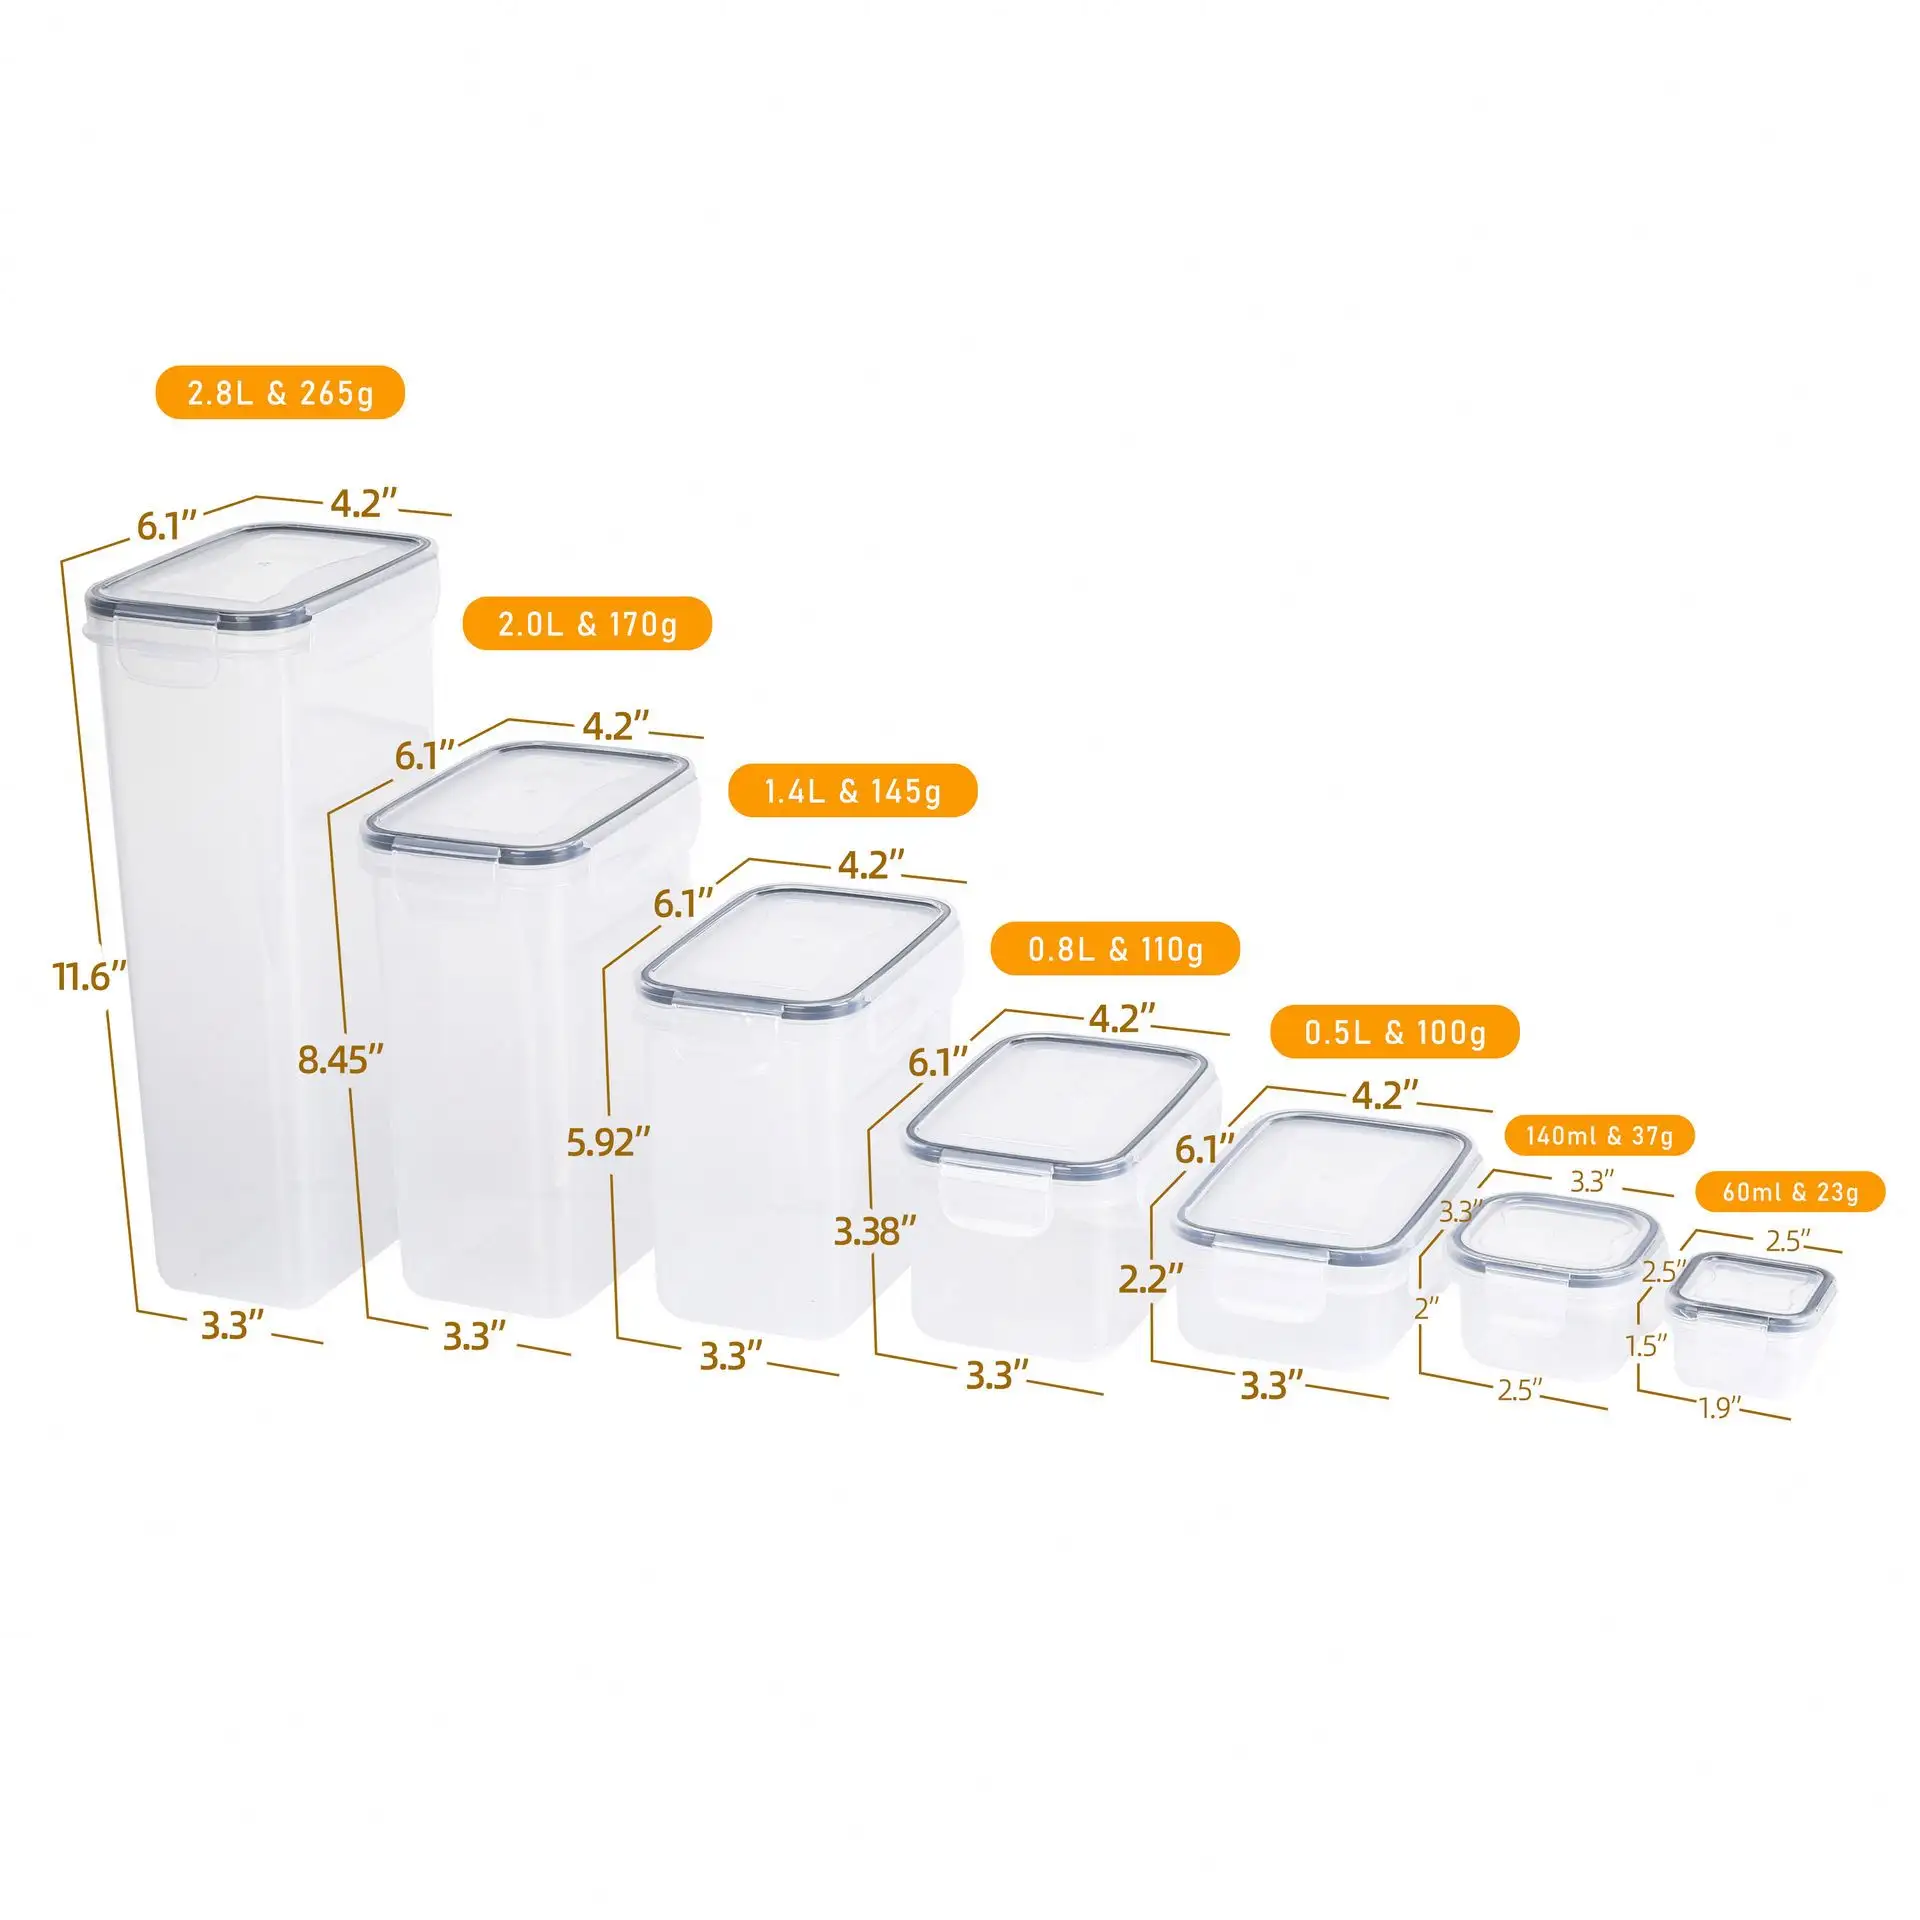 Hava geçirmez istiflenebilir mutfak kiler eşya kutuları & kutuları gıda saklama kapları Set kapaklar BPA ücretsiz plastik sıcak satış 24 paket